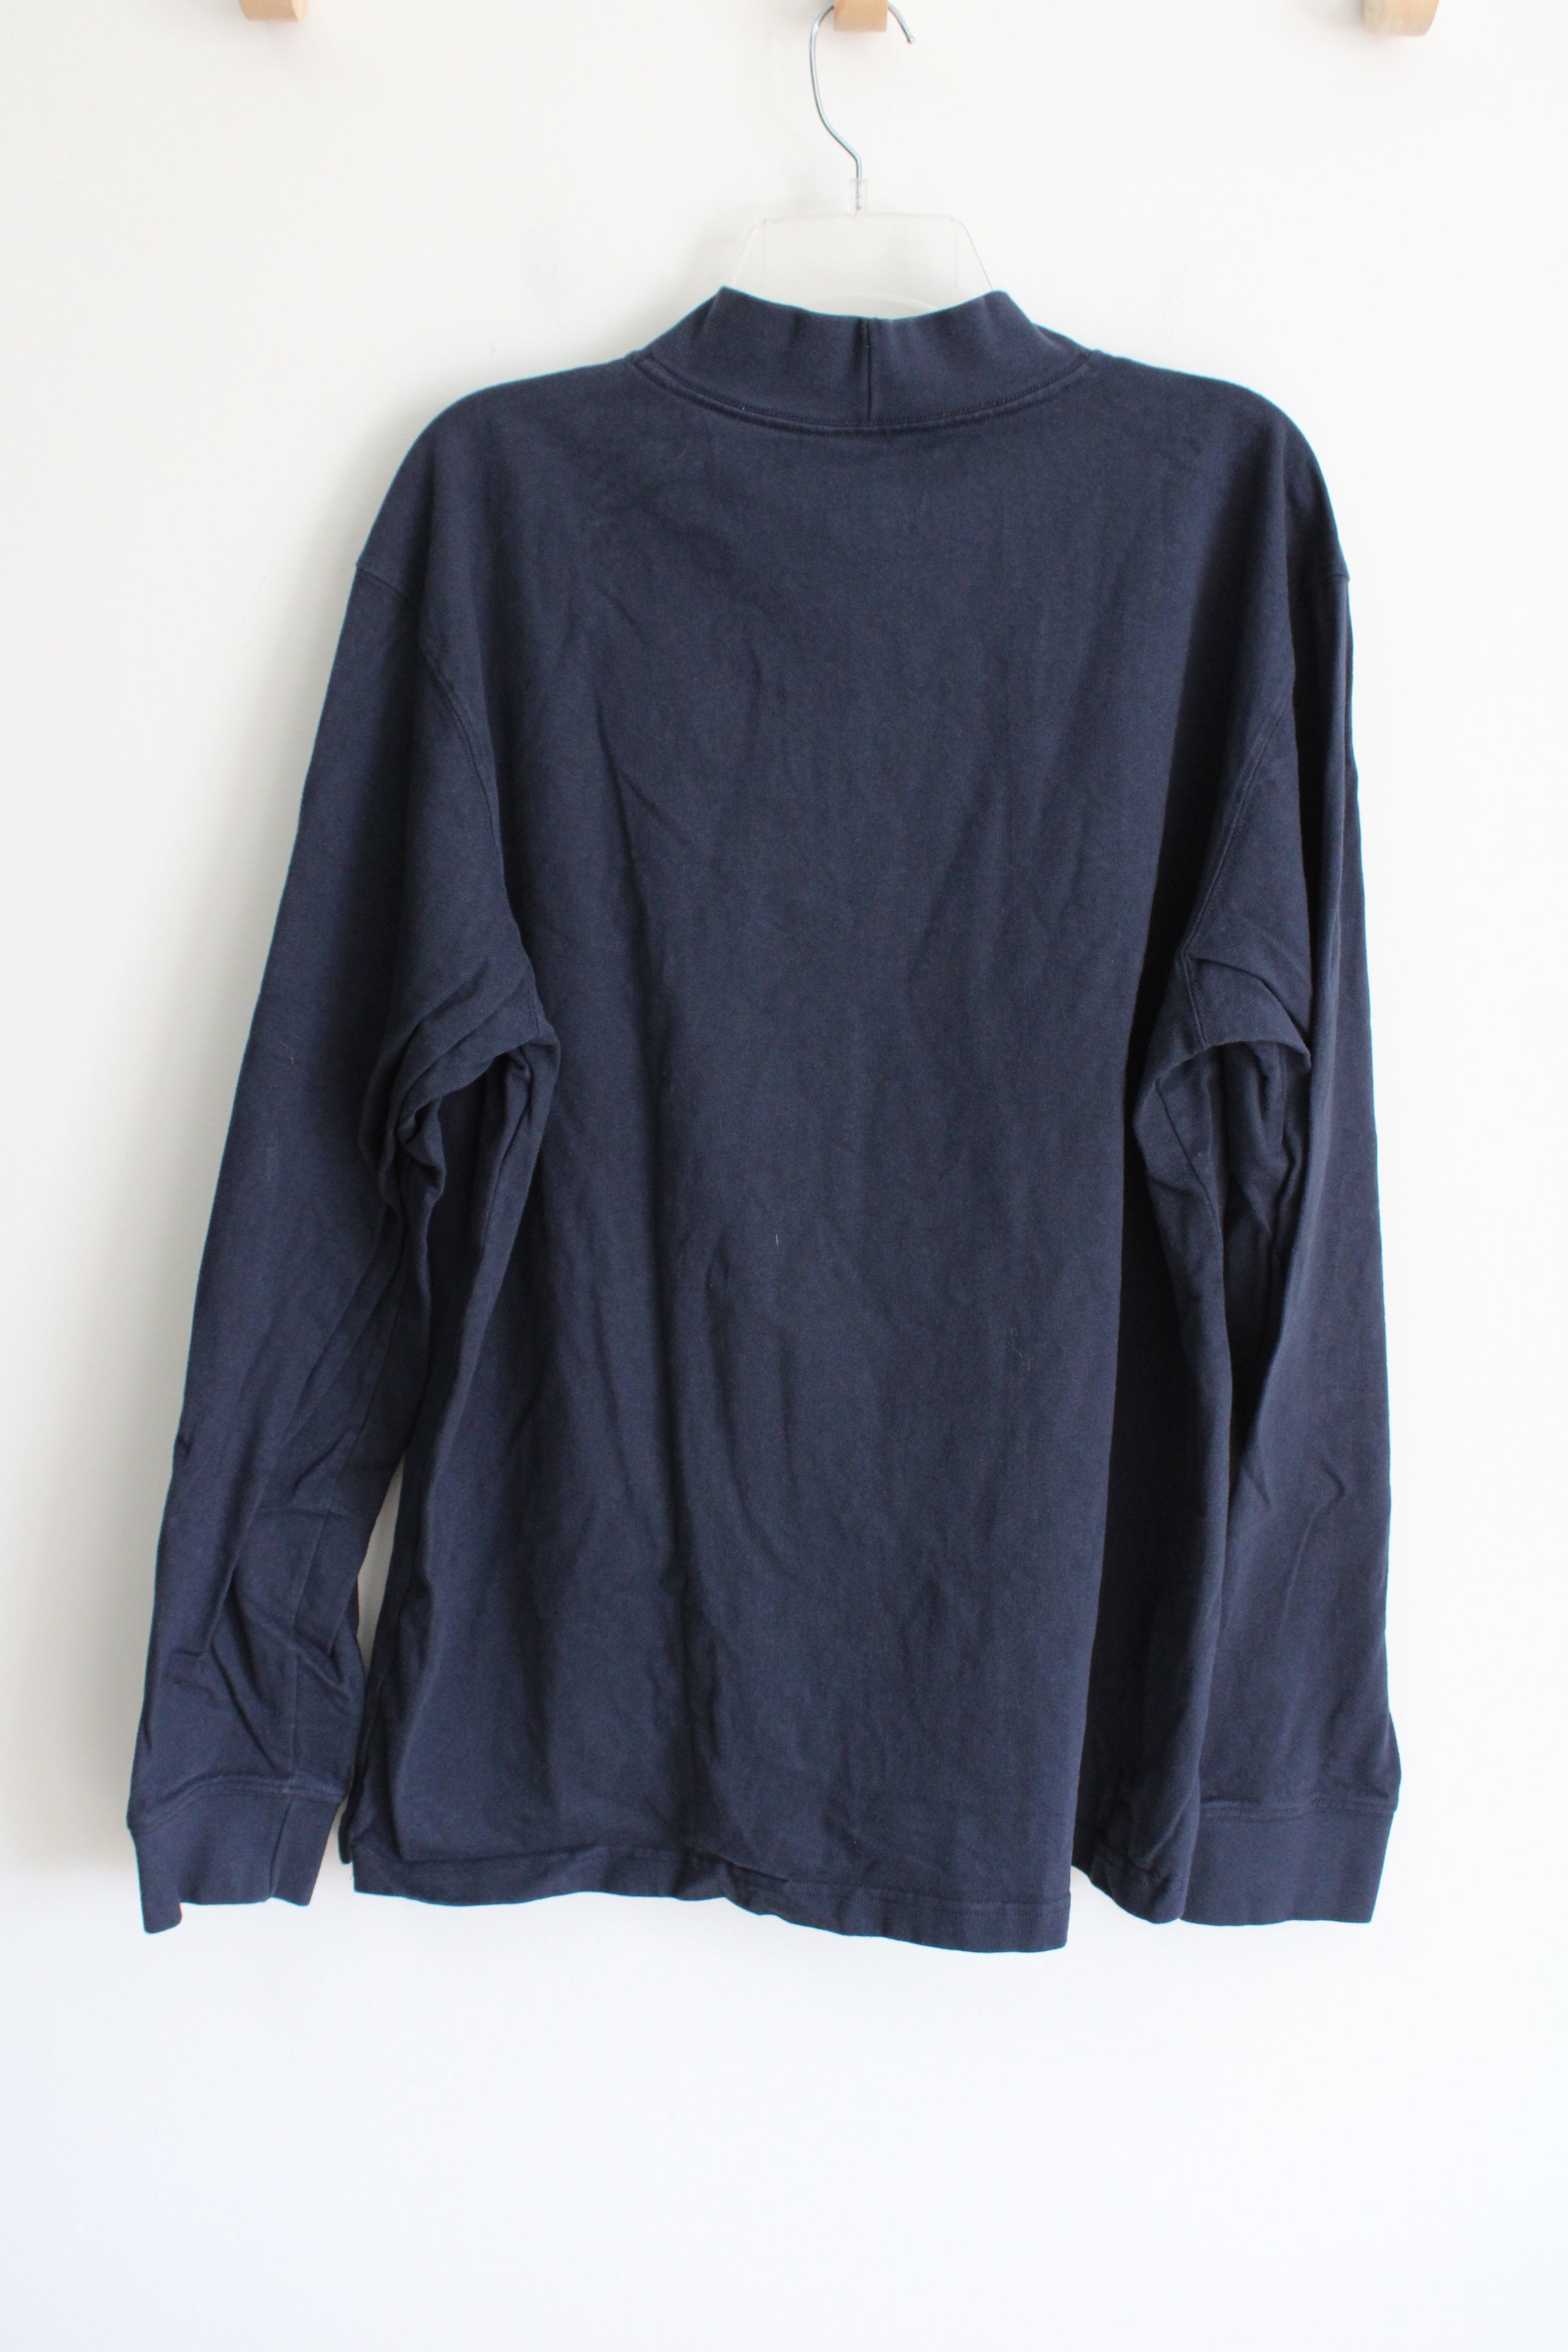 Carhartt Relaxed Fit Dark Navy Blue Mock Neck Shirt | XL